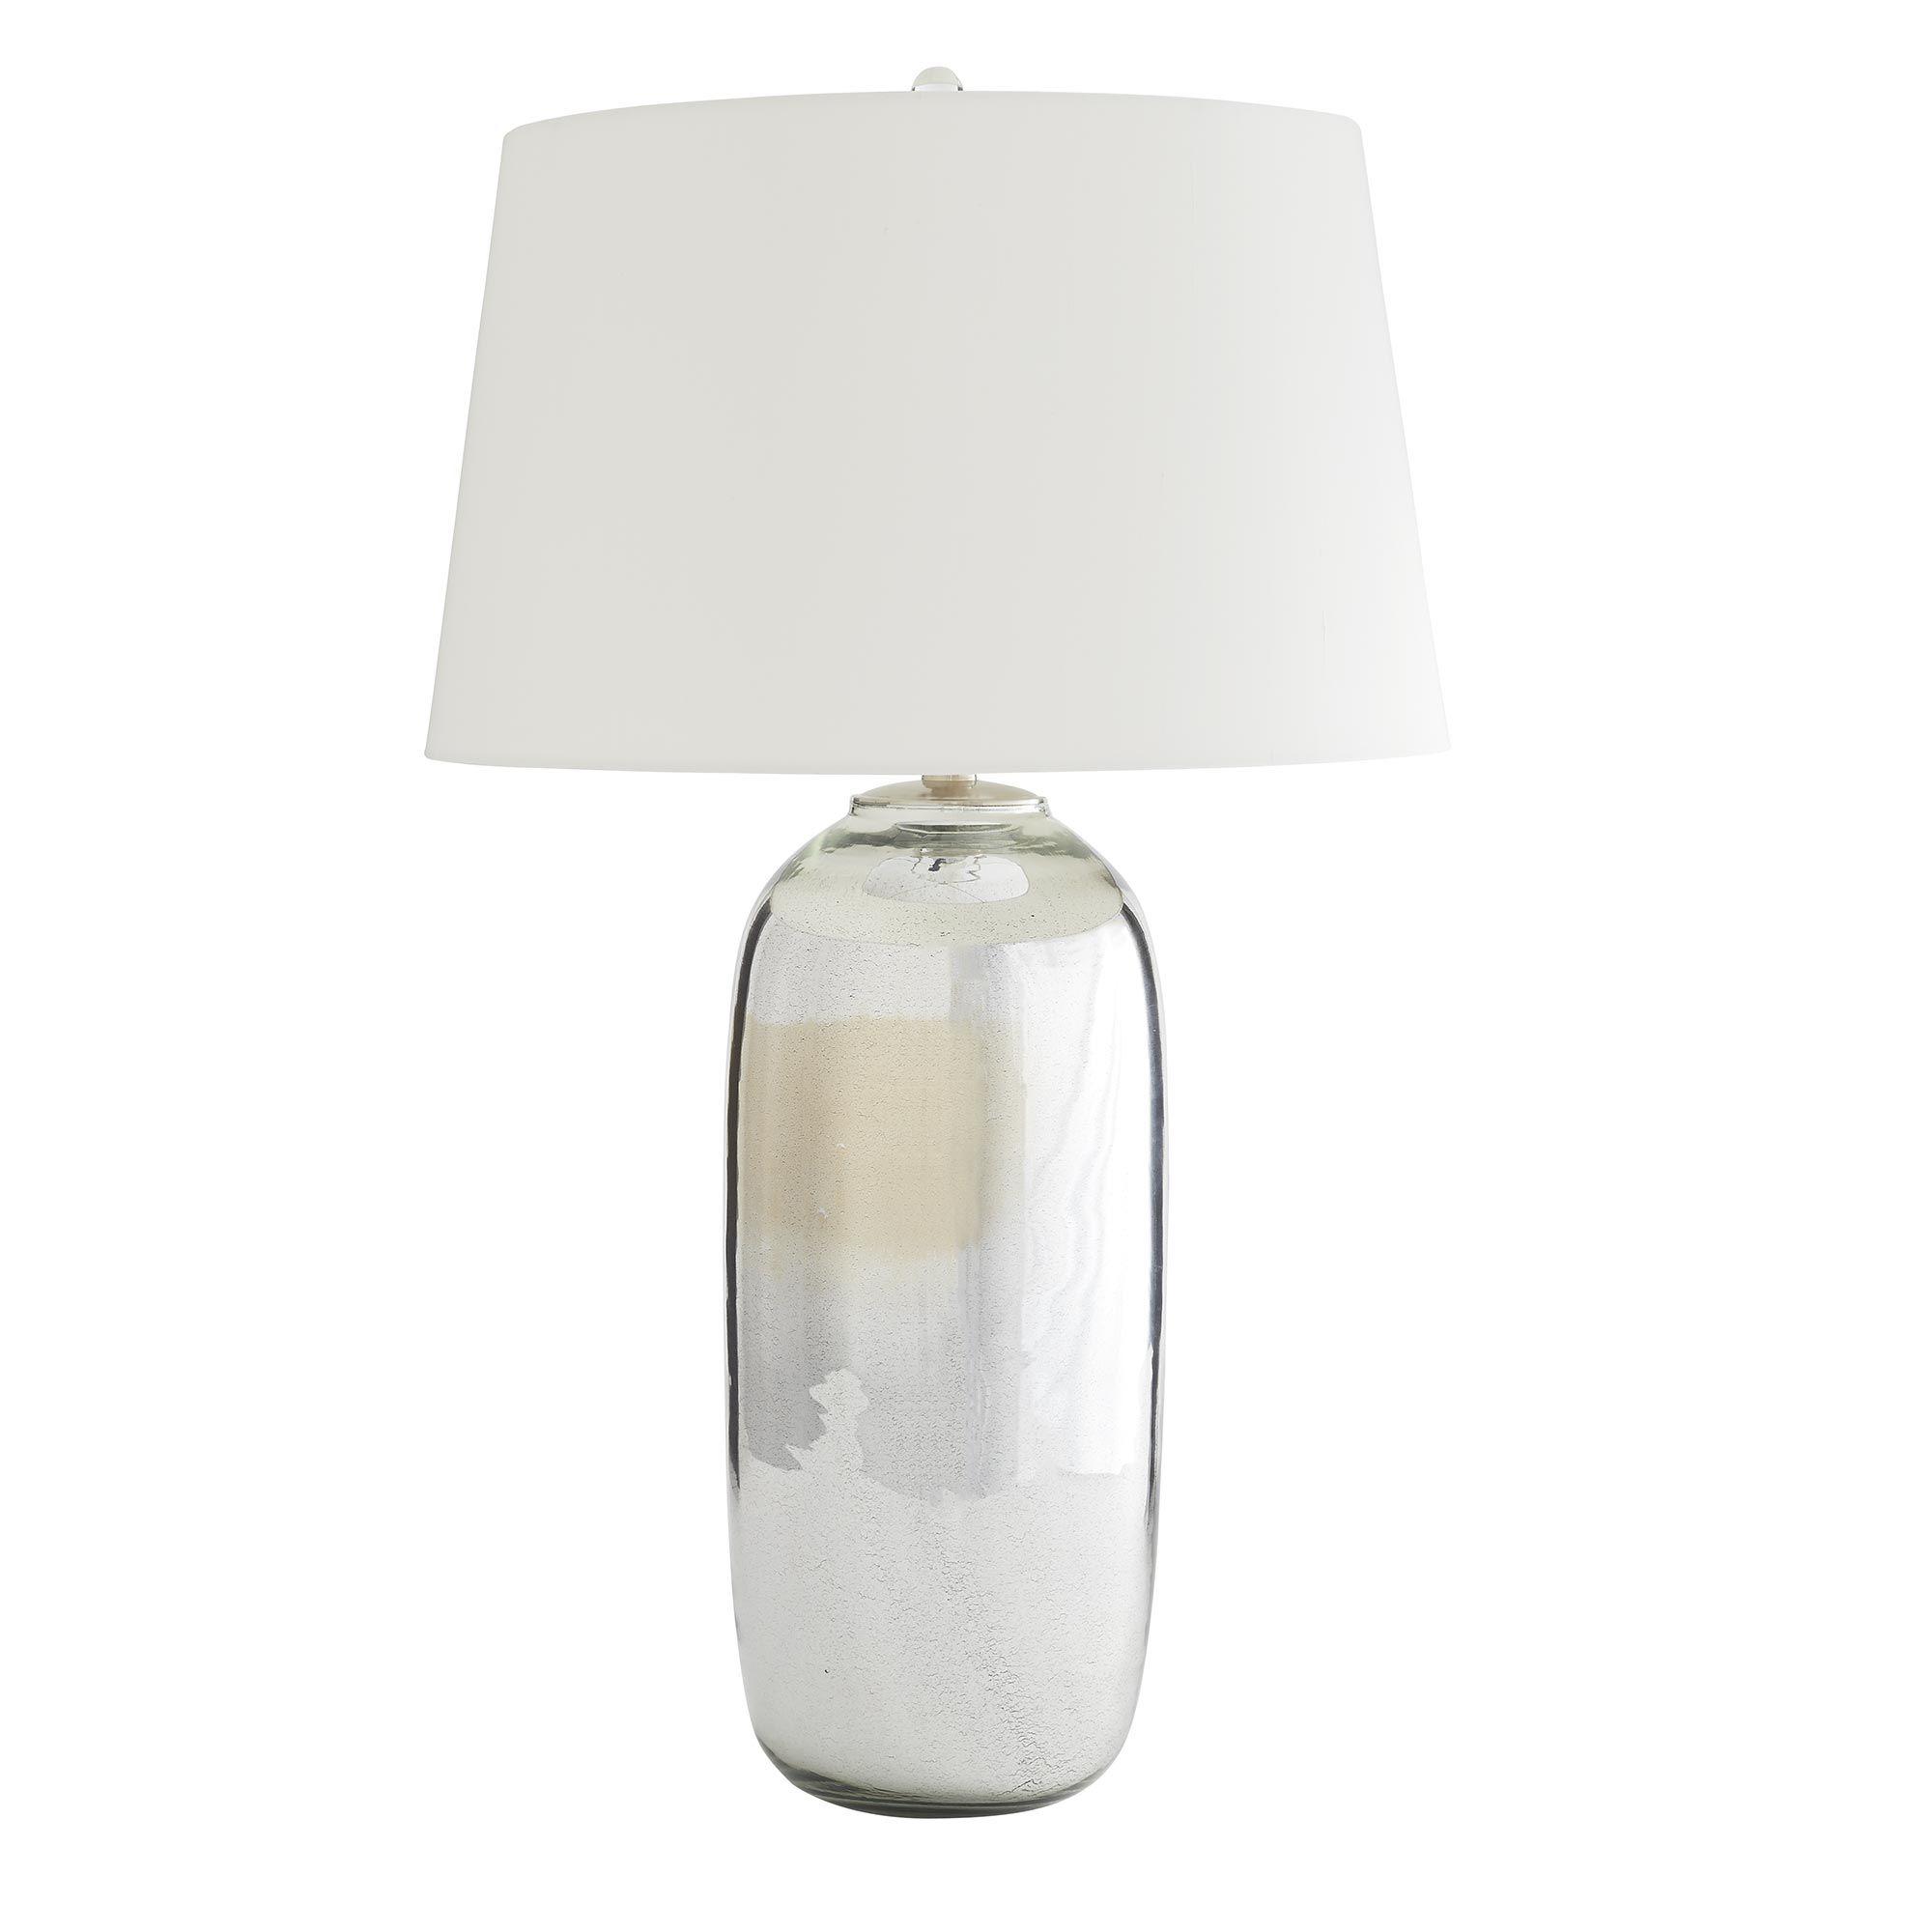 Купить Настольная лампа Anderson Lamp в интернет-магазине roooms.ru